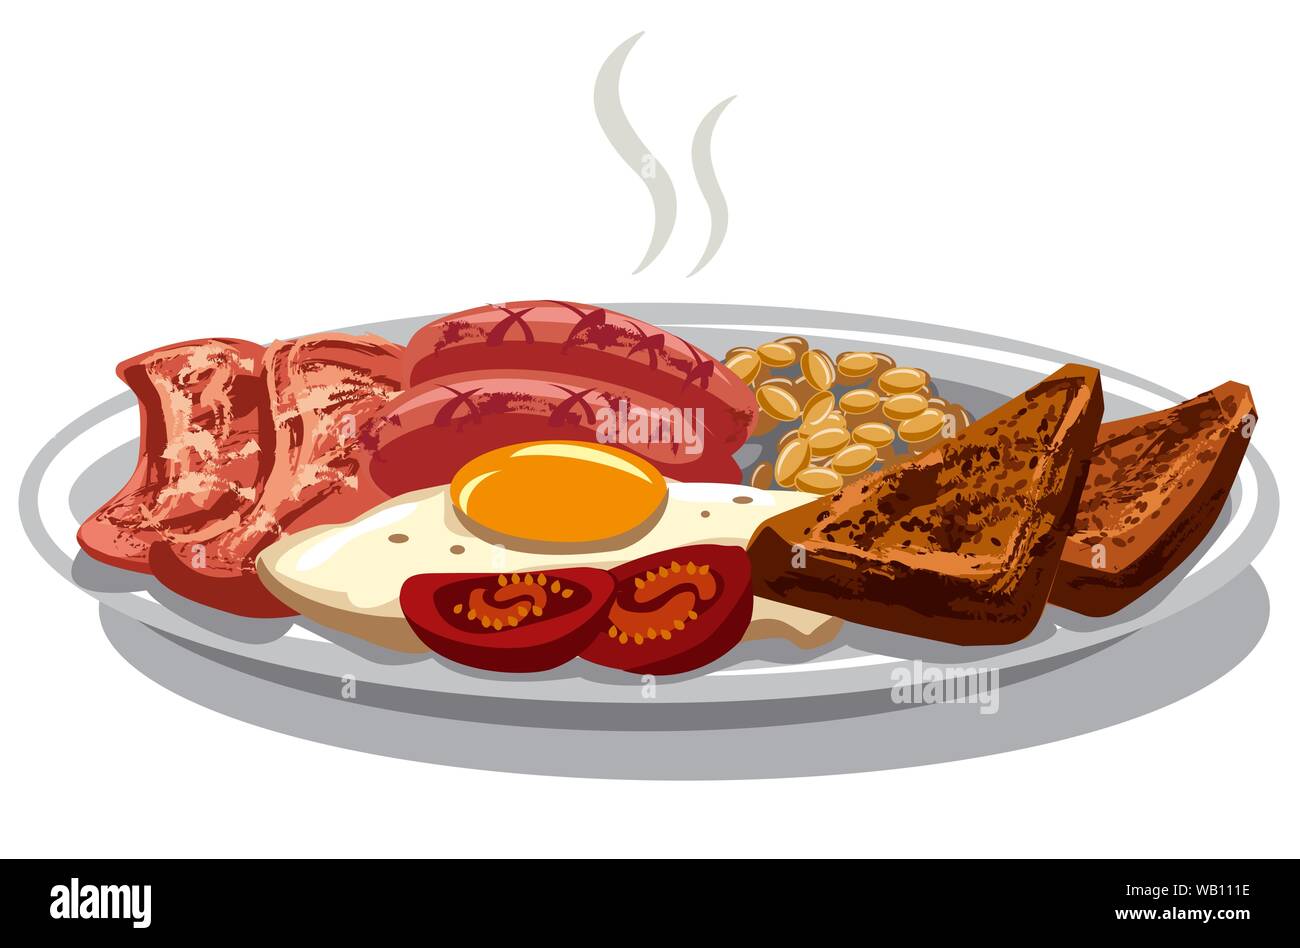 Illustrazione della prima colazione inglese tradizionale con uova fritte e pancetta Illustrazione Vettoriale